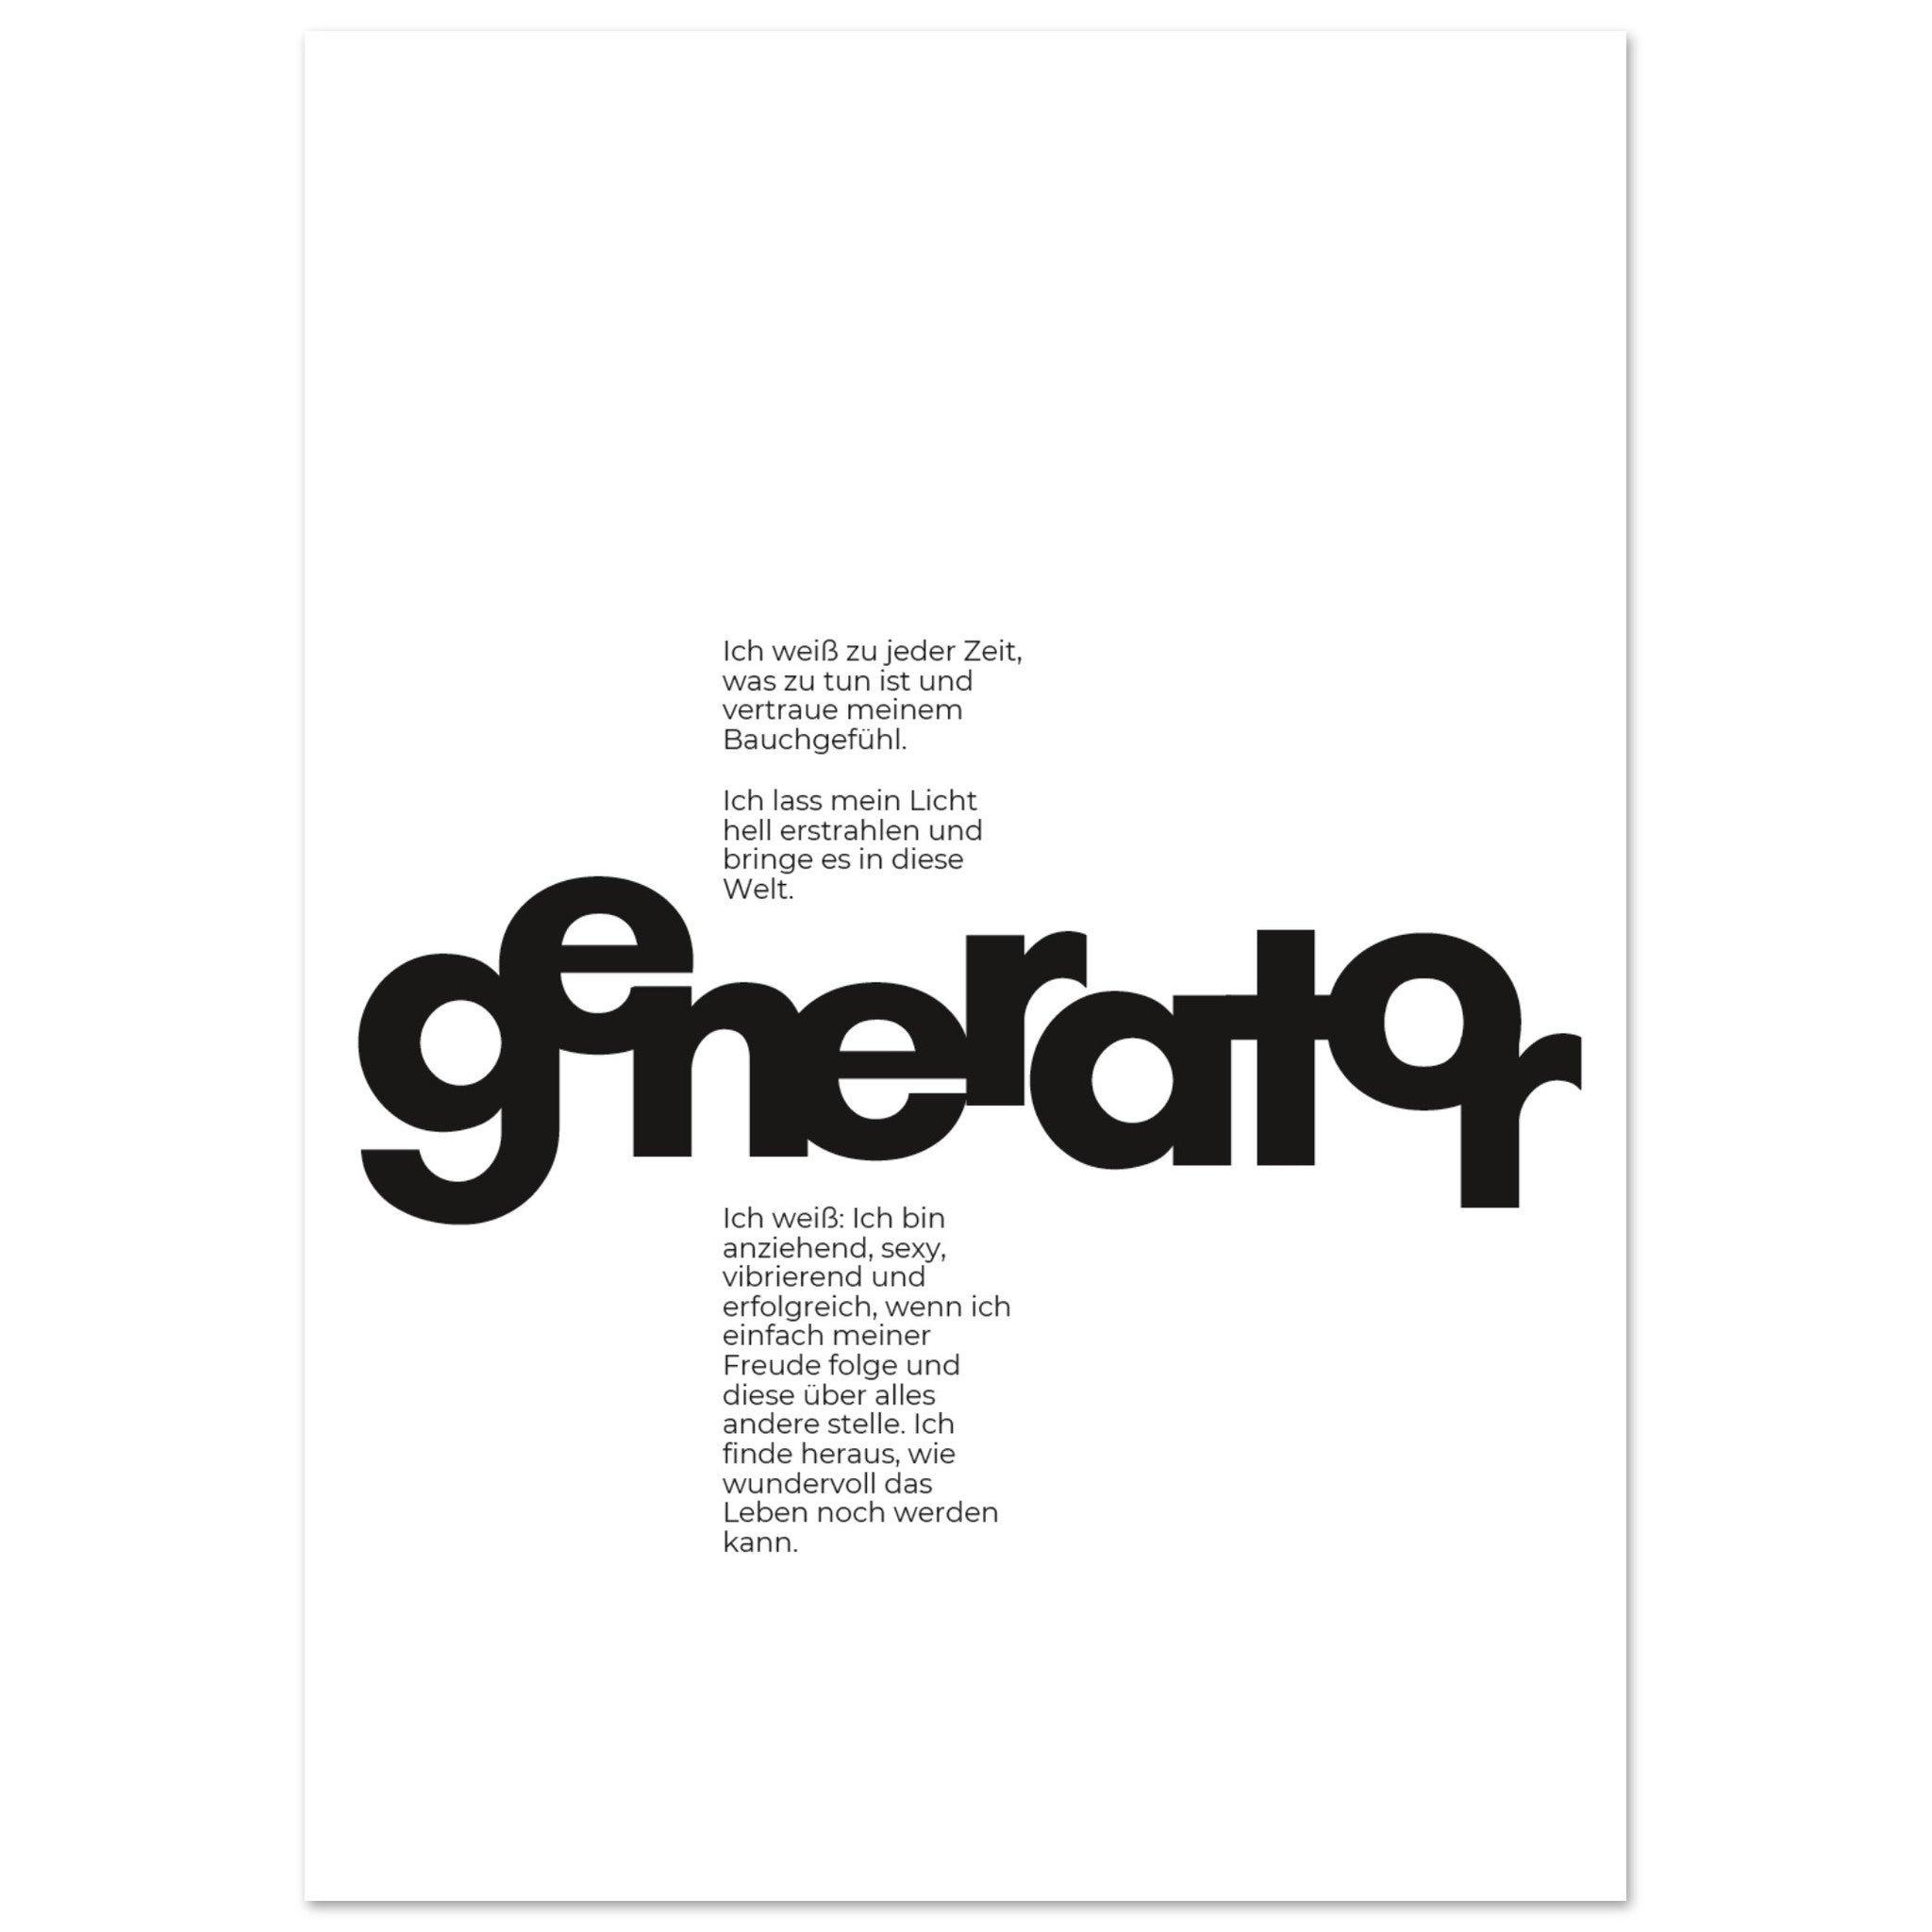 Human Design Poster GENERATOR - Black & White